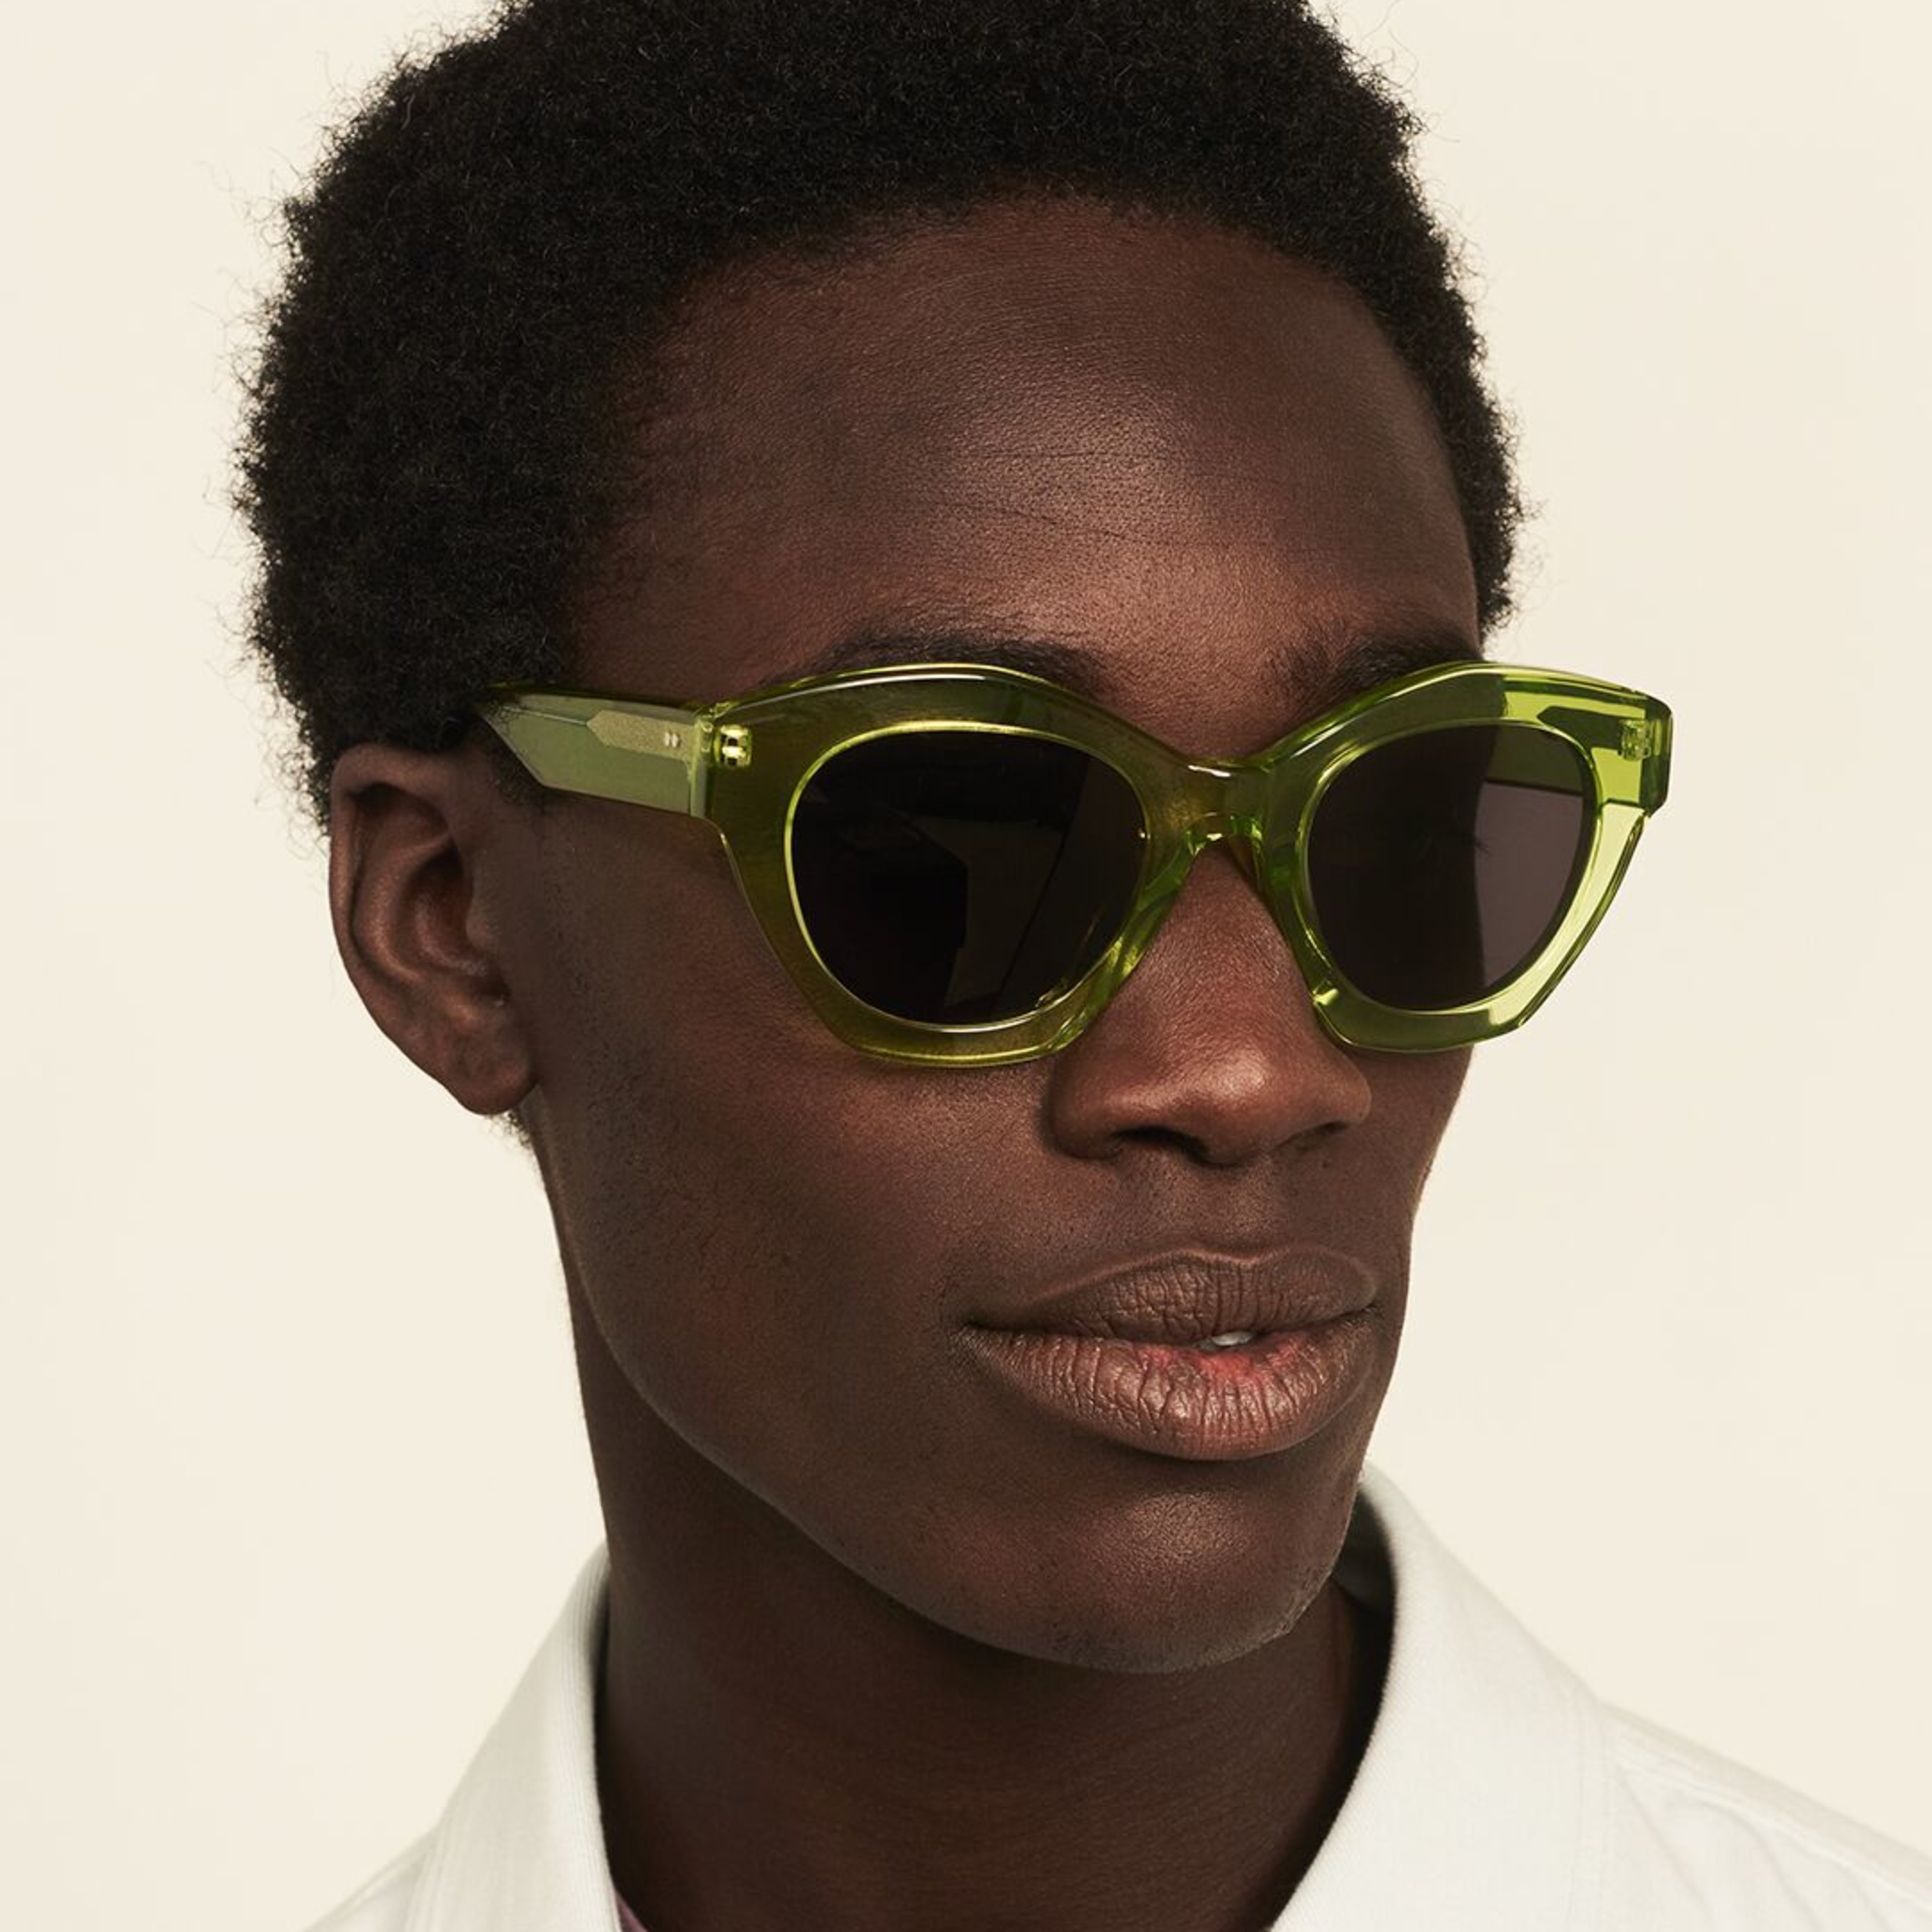 Ace & Tate Sunglasses |  Acetate in Green